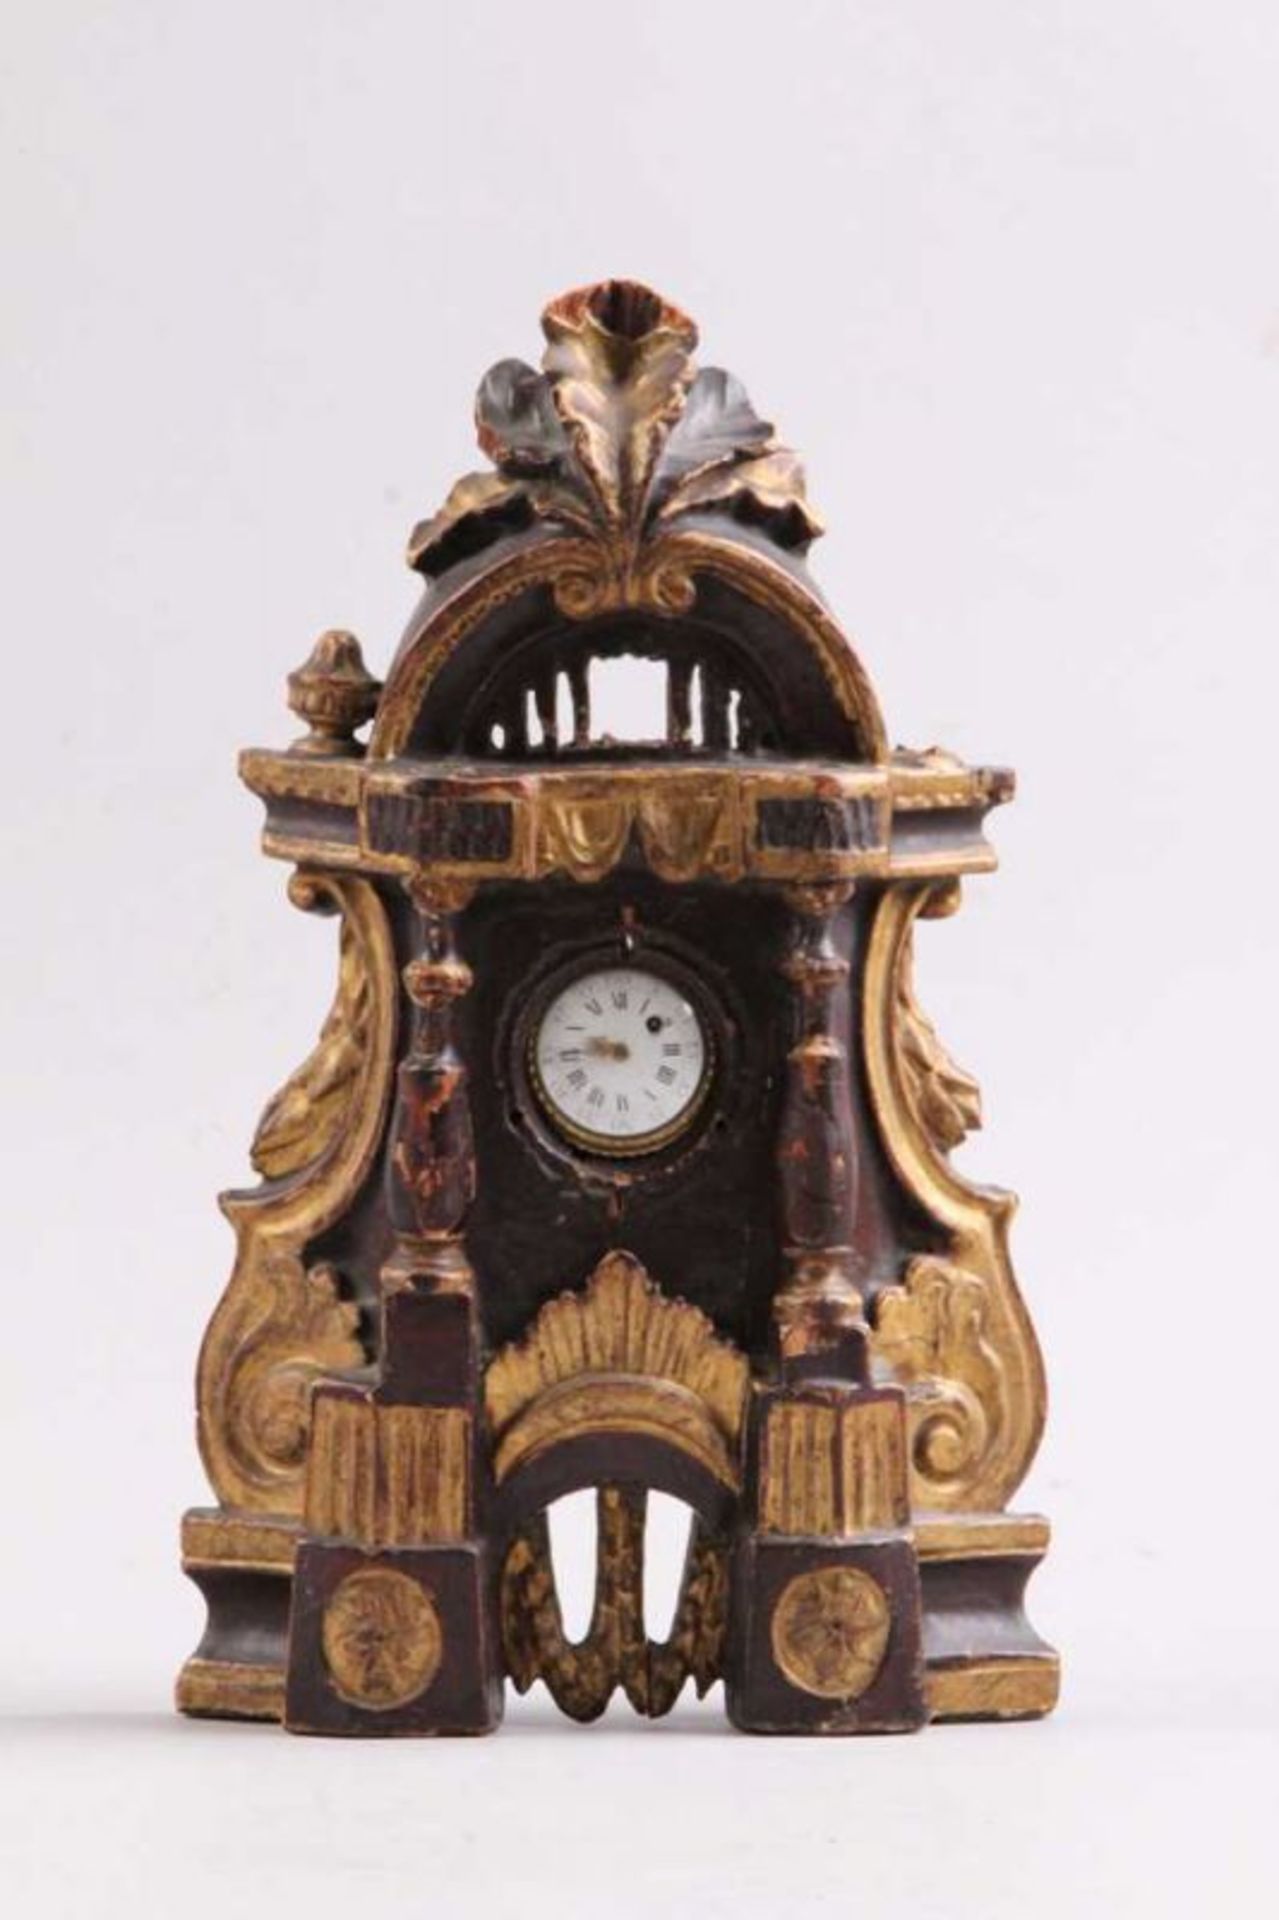 Uhrenständer mit Spindeluhr.Süddeutsch, 2. H. 18. Jh. Wohl Lindenholz, geschnitzt, gefasst und